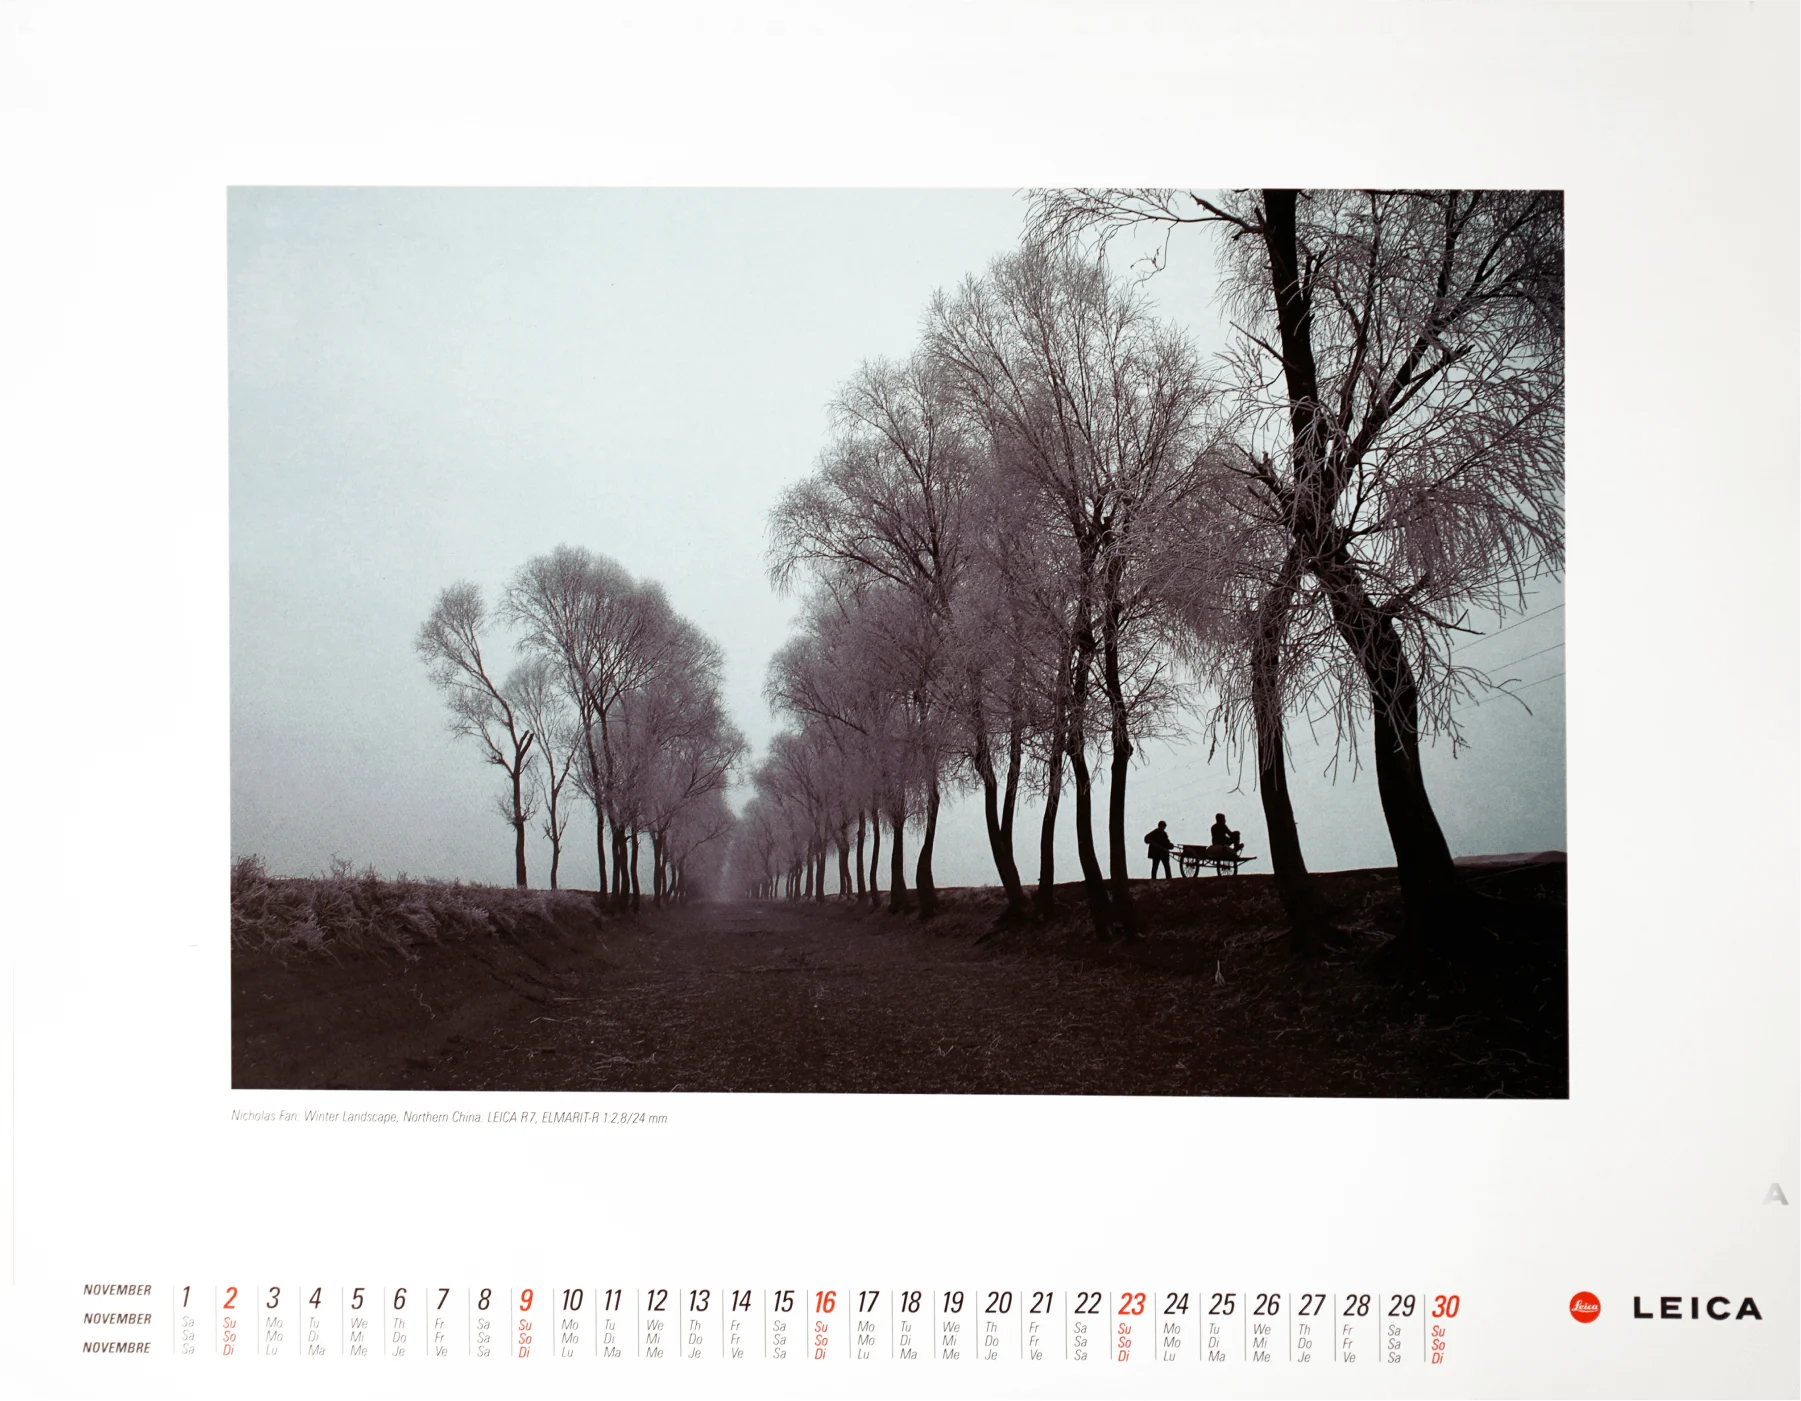 德國 Leica 1997 年全球月曆專題影像